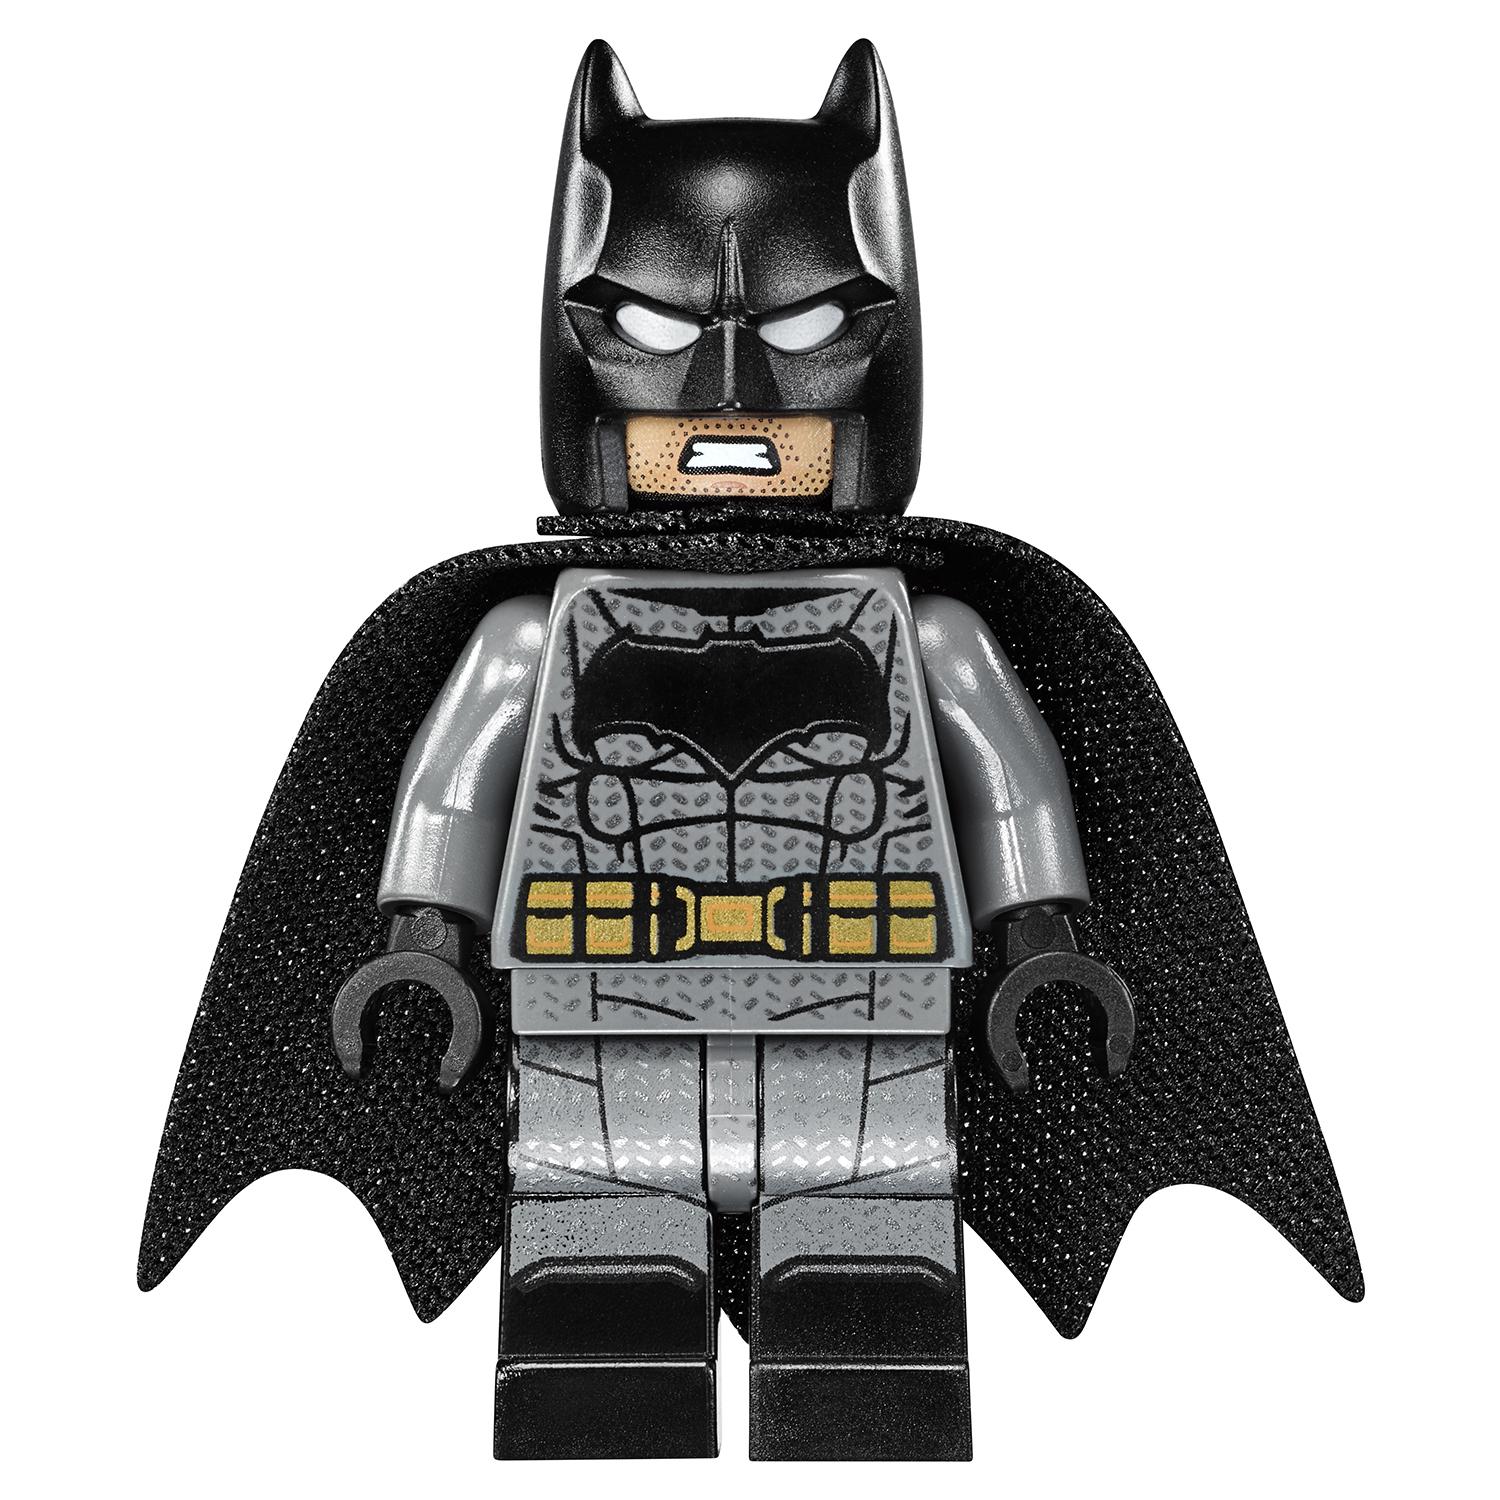 Конструктор Lego Super Heroes – Сражение в туннеле  